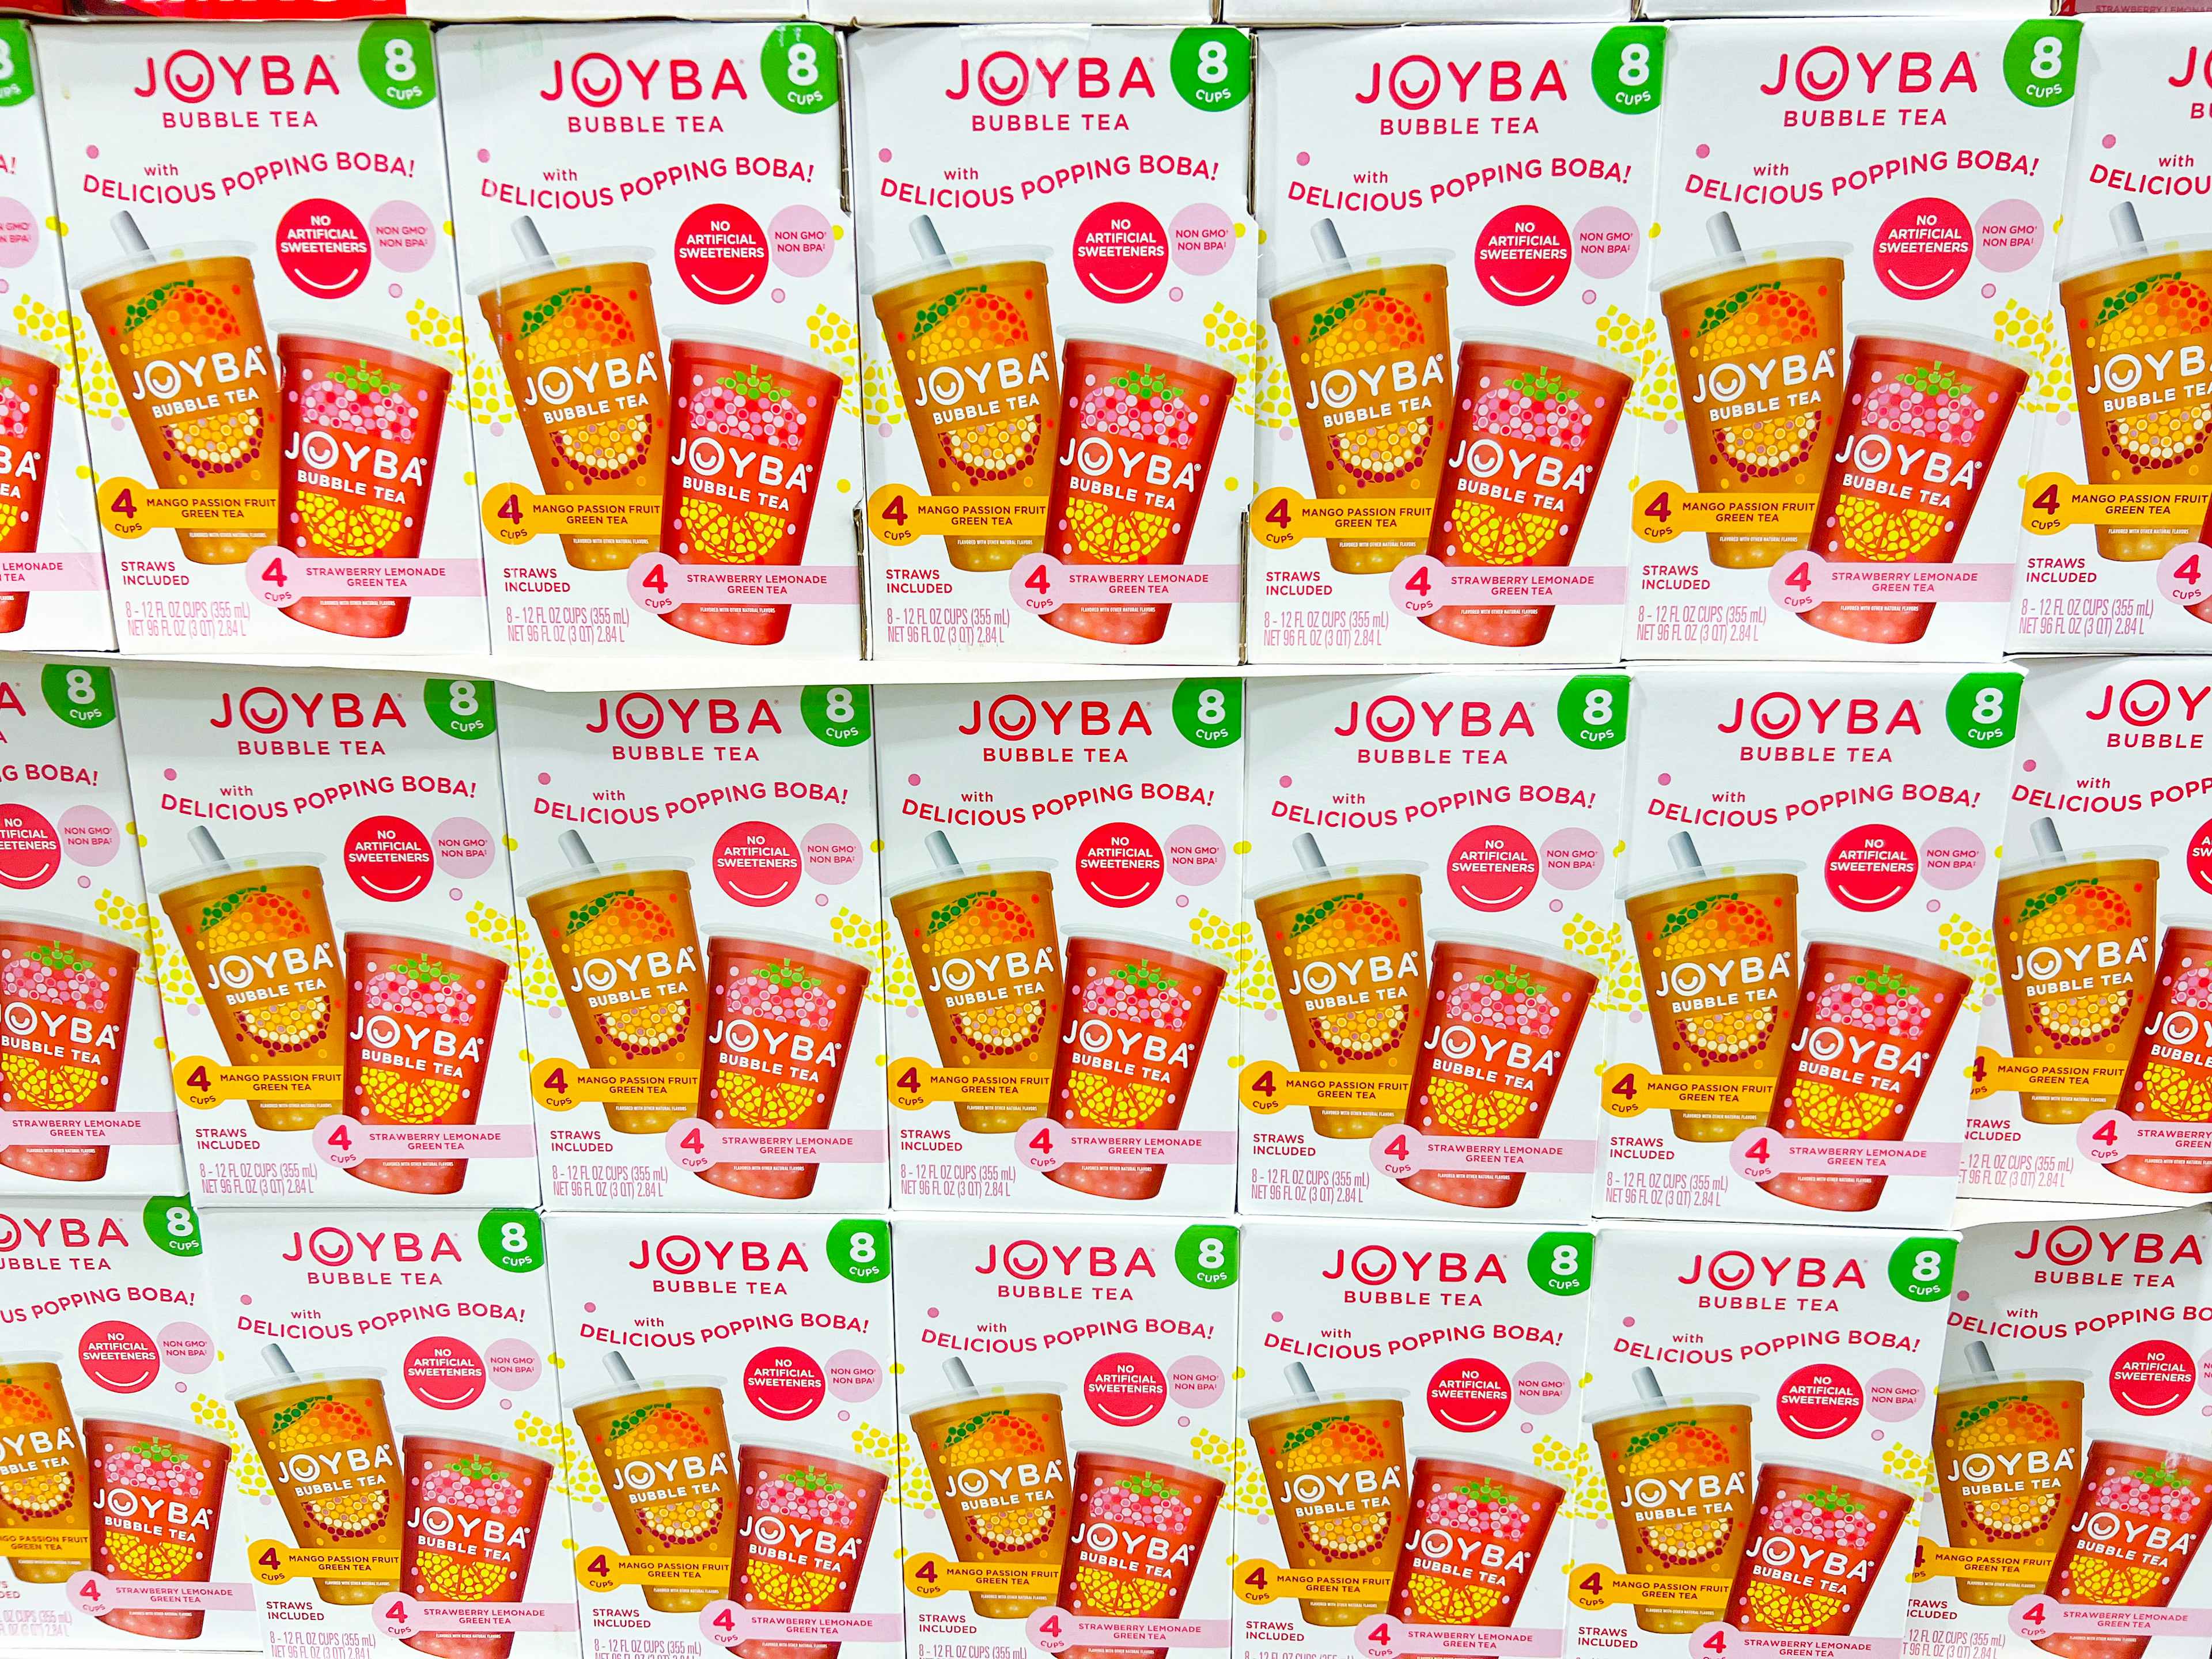 boxes of joyba bubble tea